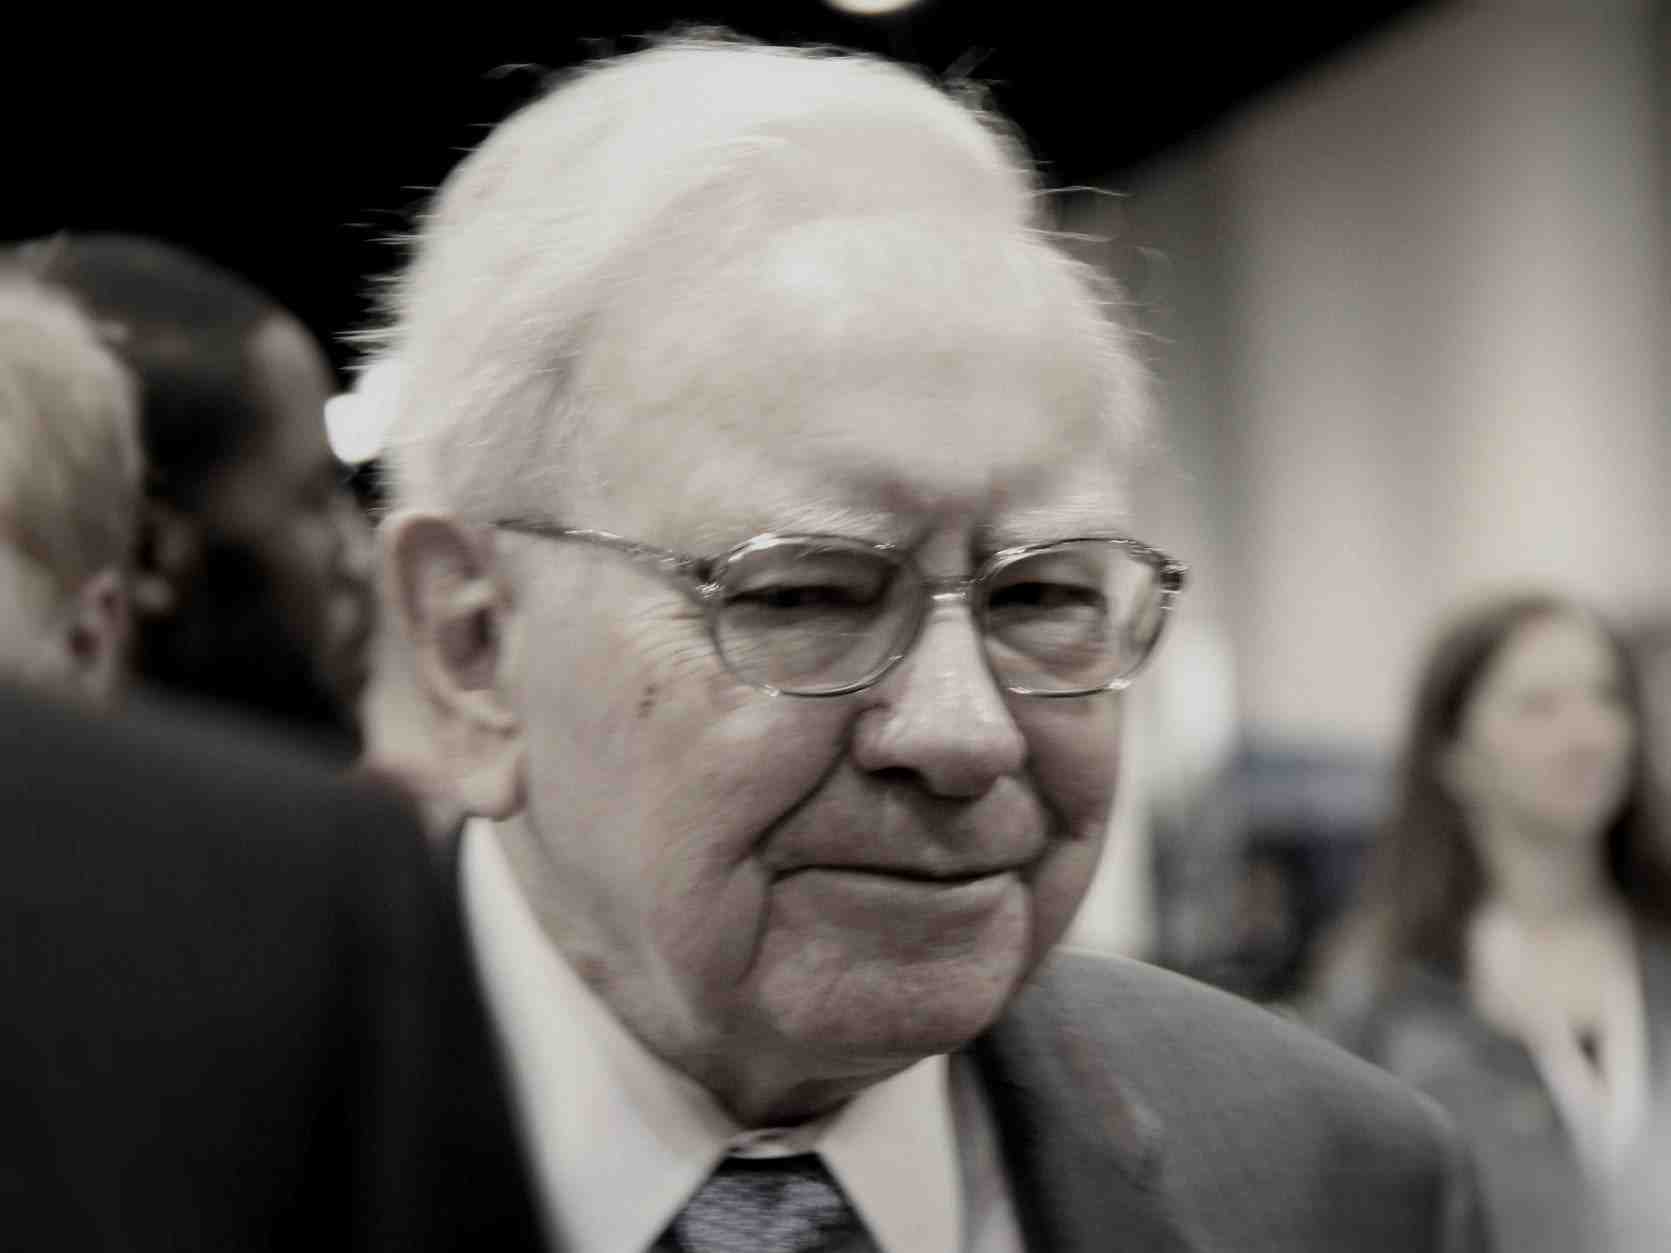 Why did Buffett buy GEICO?